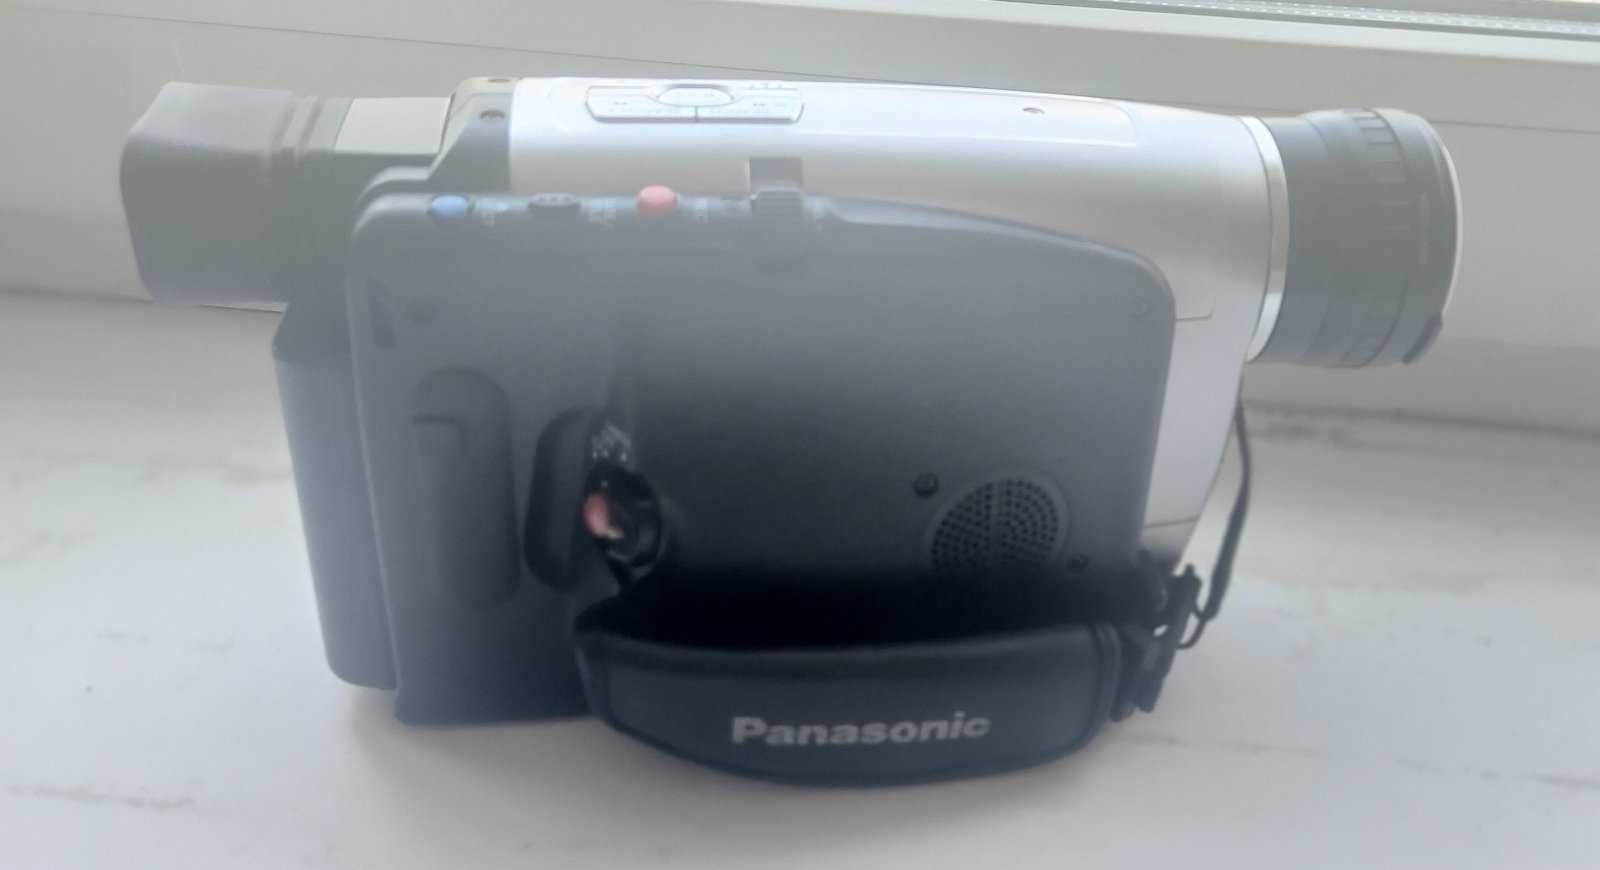 Продам видеокамеру Panasonic NV-VZ1